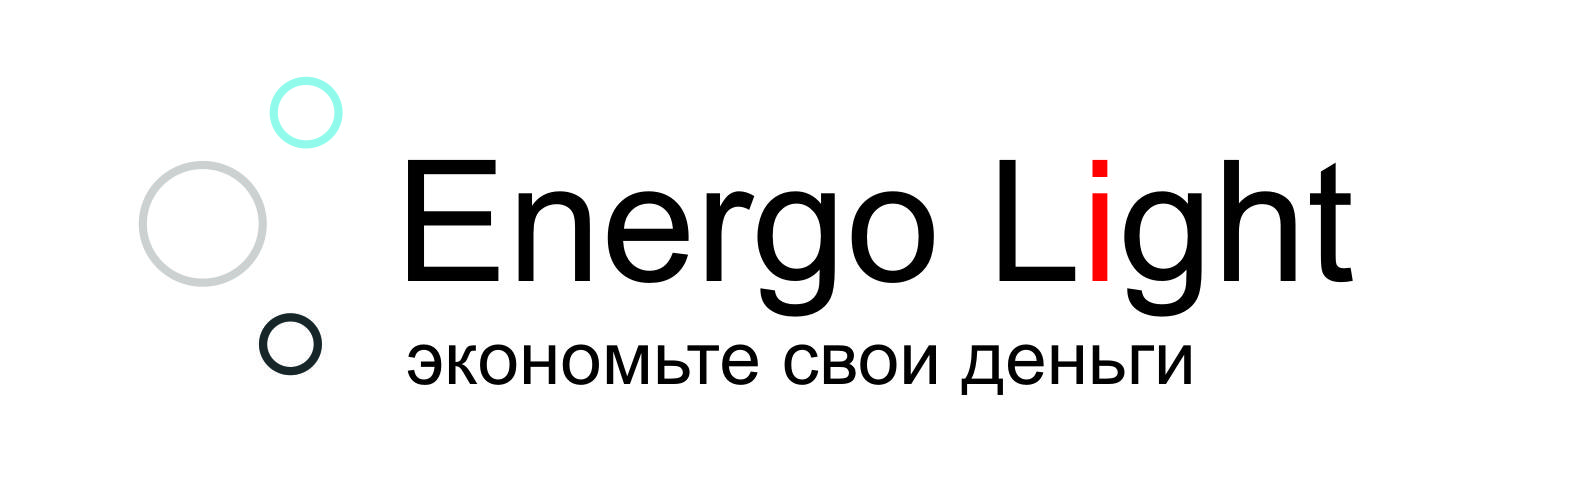 логотип Energo Light NEW.jpg